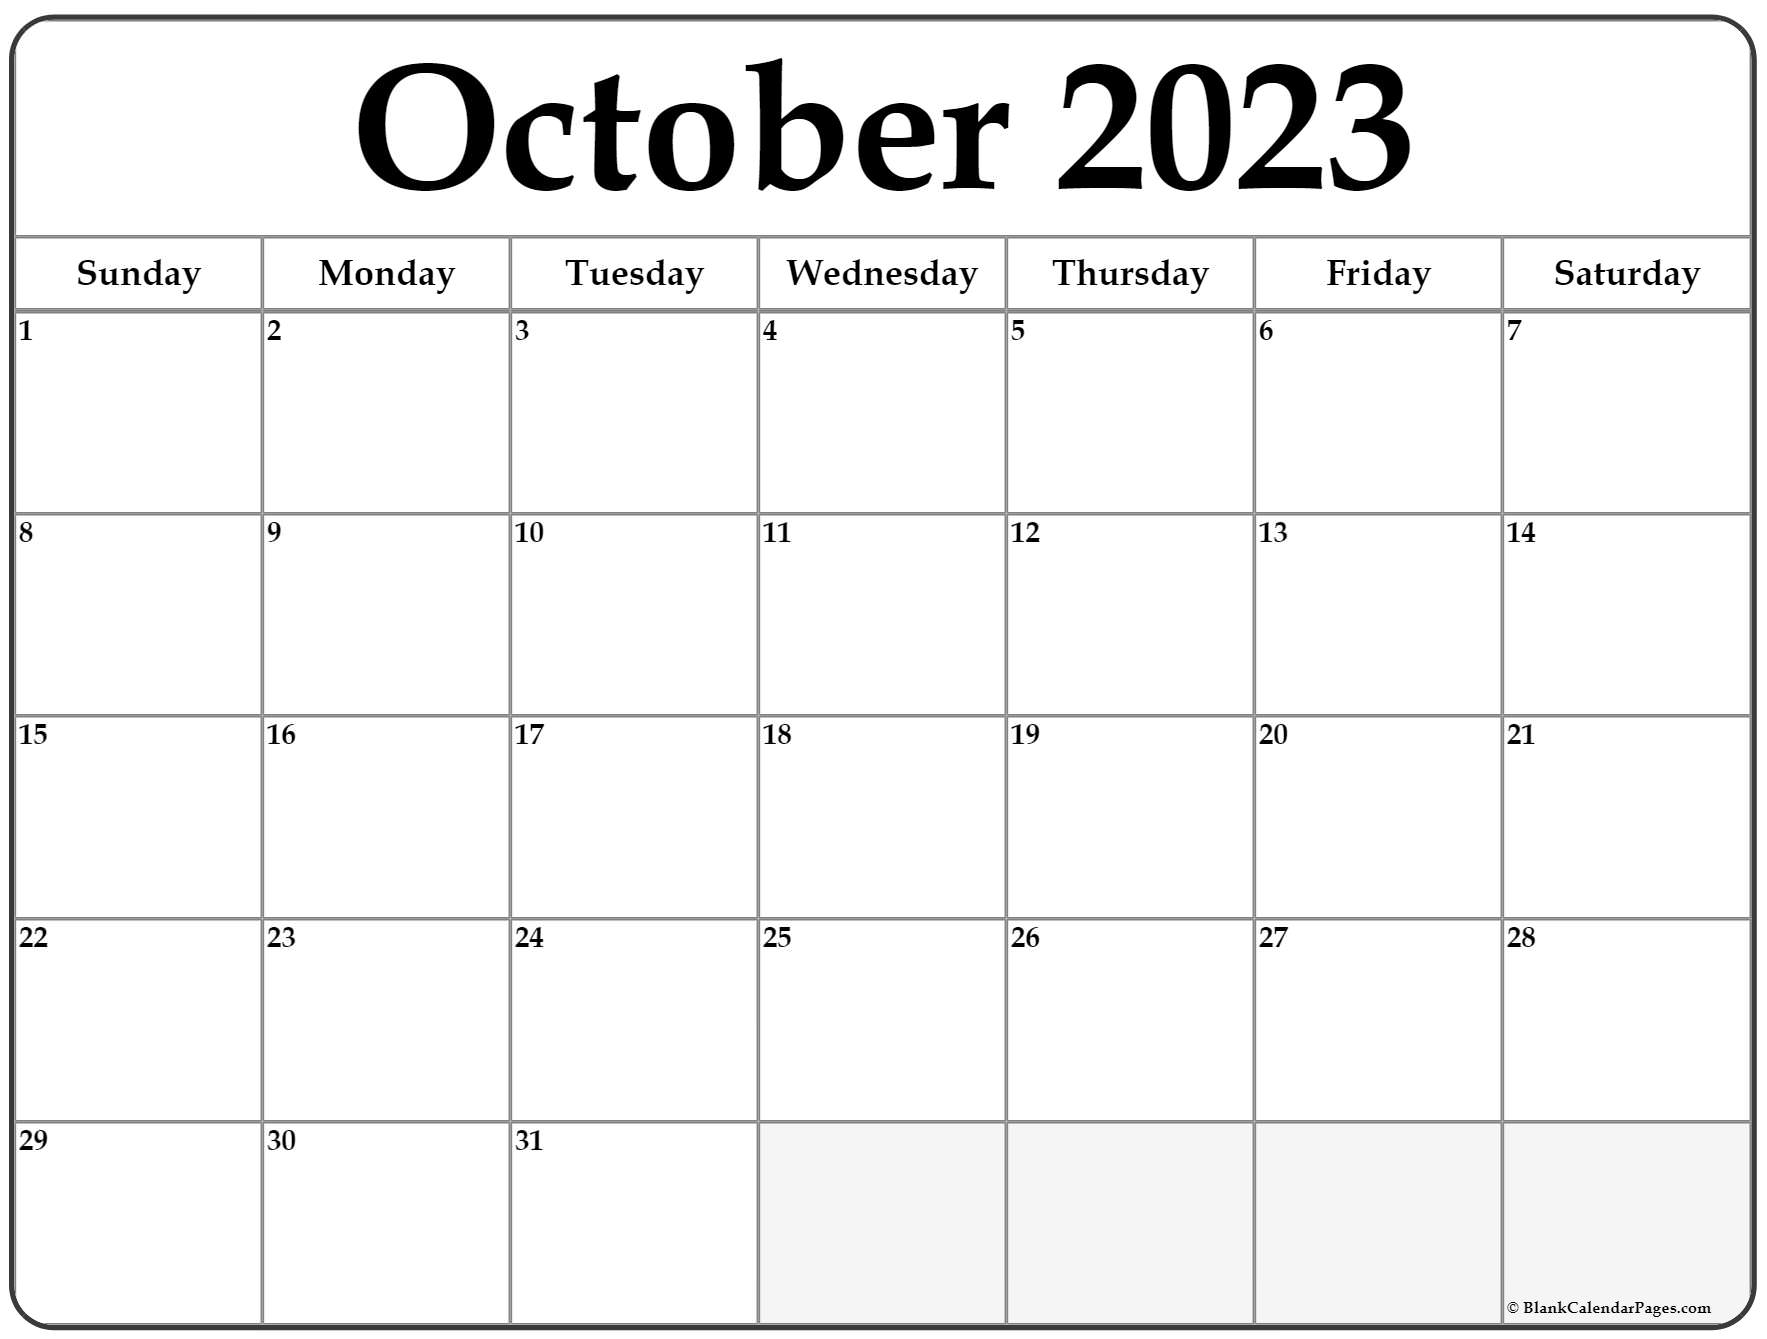 october 2023 calendar free printable calendar